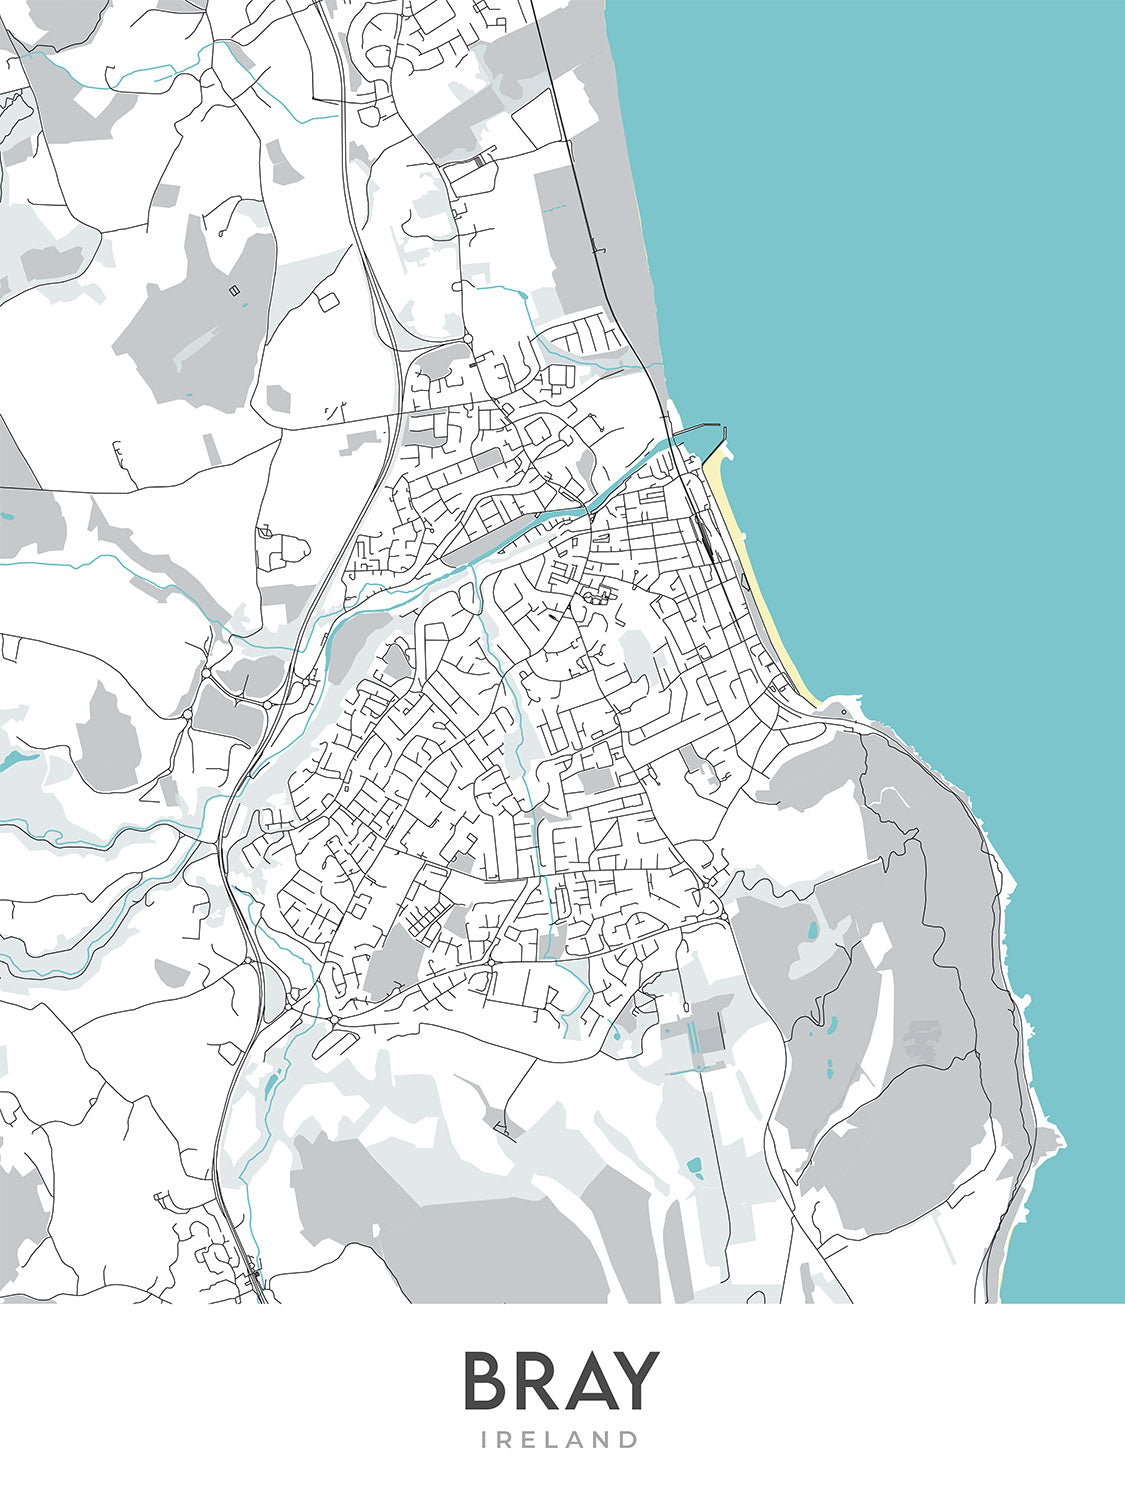 Moderner Stadtplan von Bray, Irland: Bray Head, Bray Harbour, Bray Head Nature Reserve, N11, R117